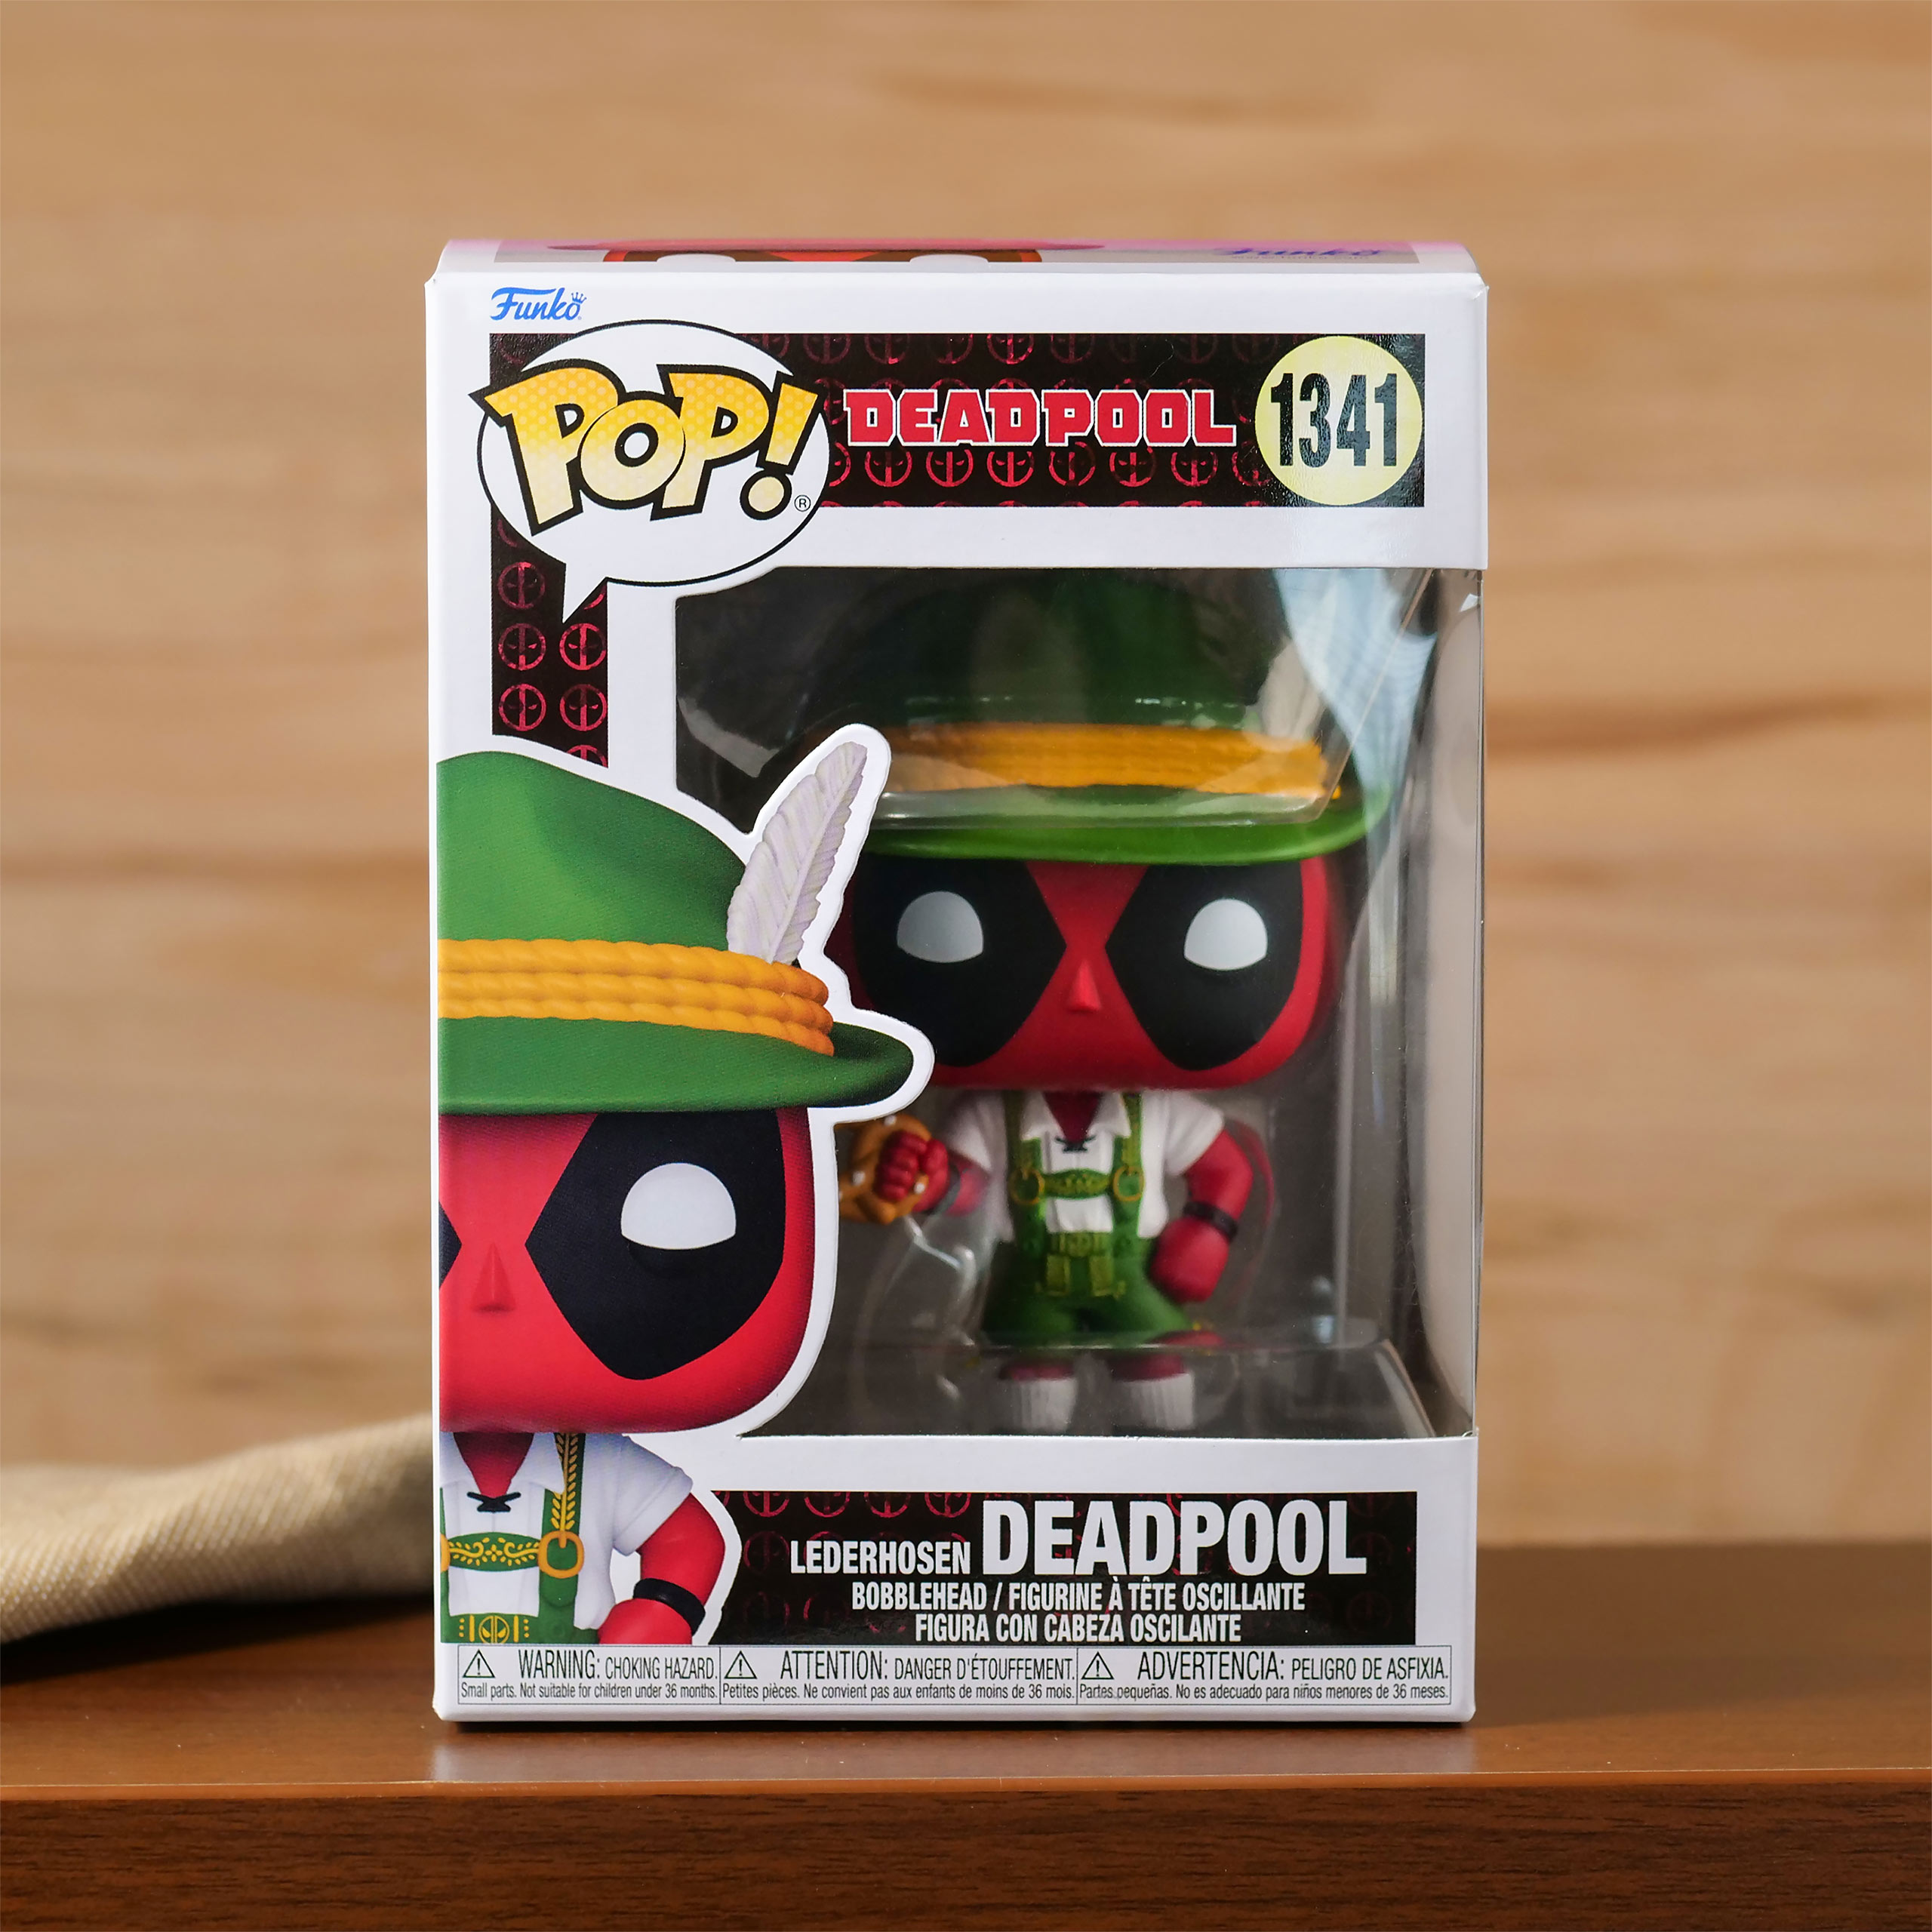 Deadpool mit Lederhose Funko Pop Wackelkopf-Figur